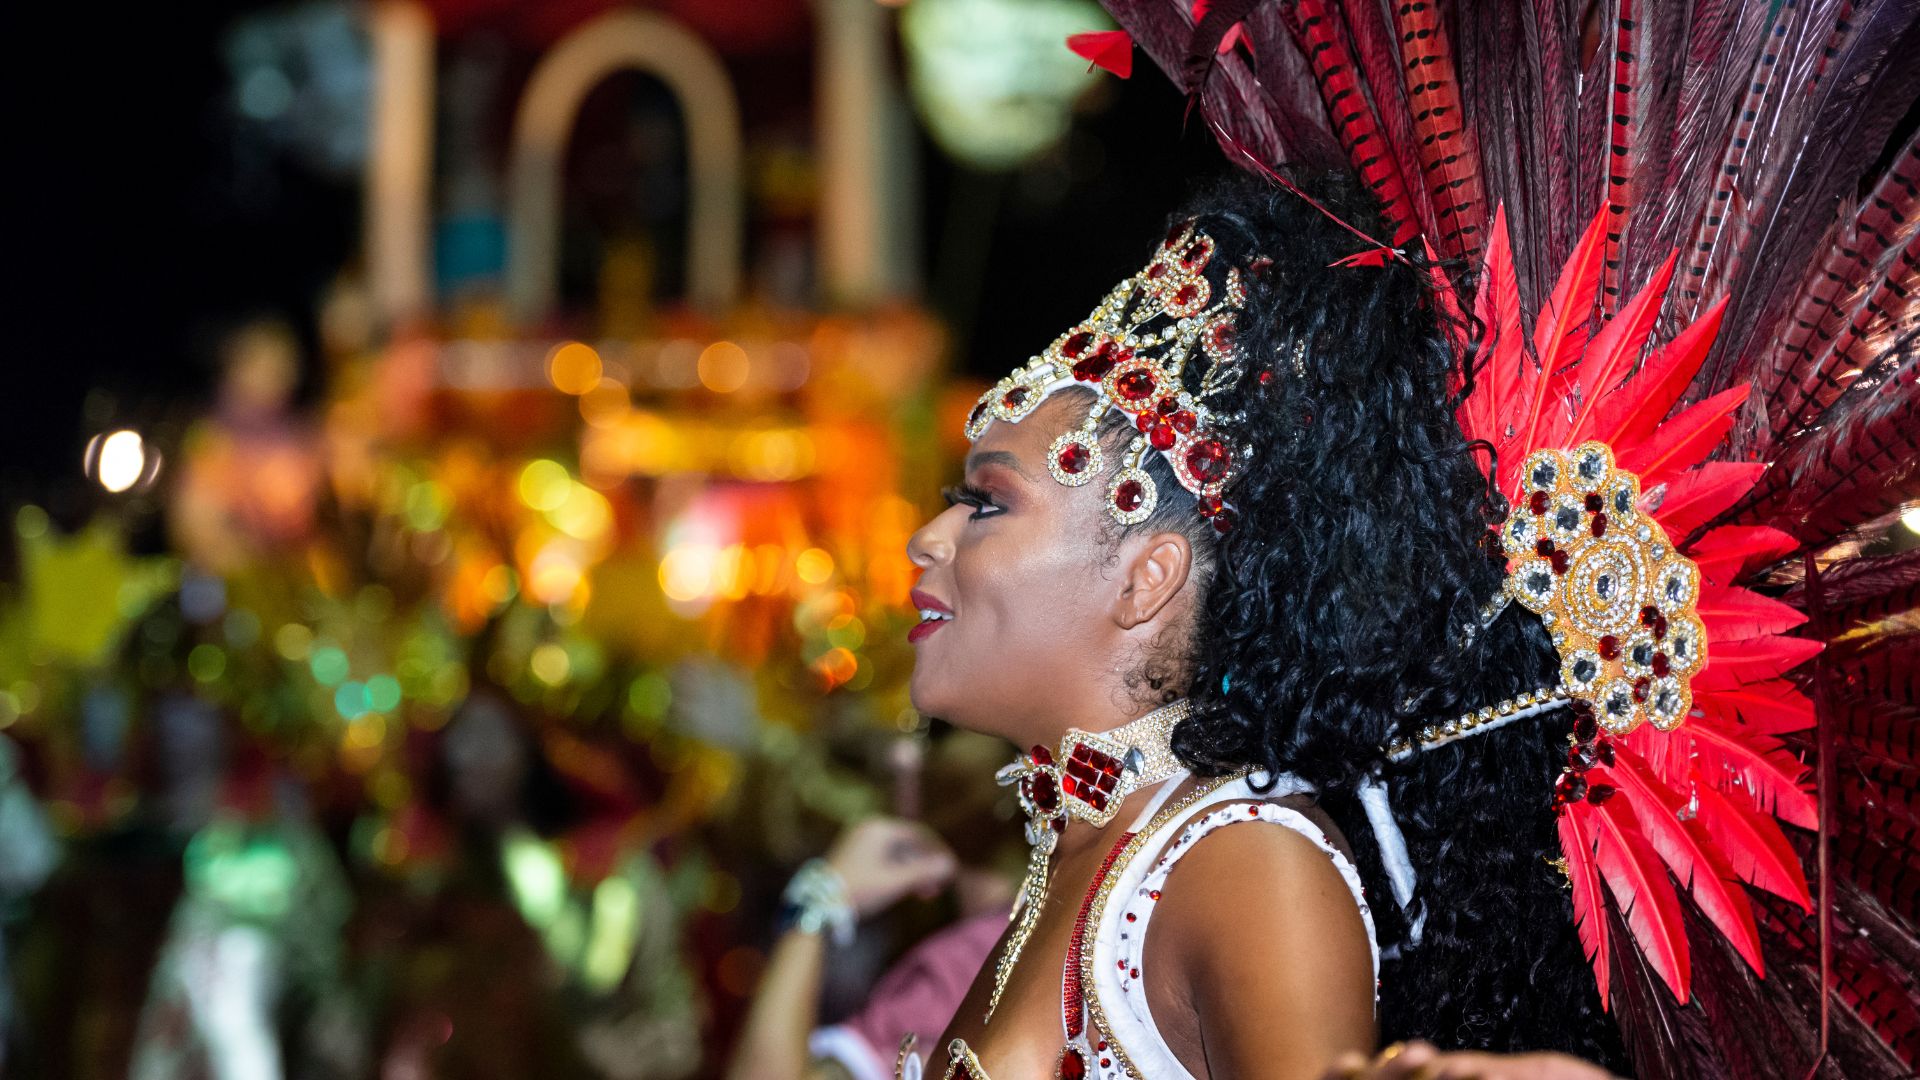 Culture Highlight: Celebrating Carnival in Brazil